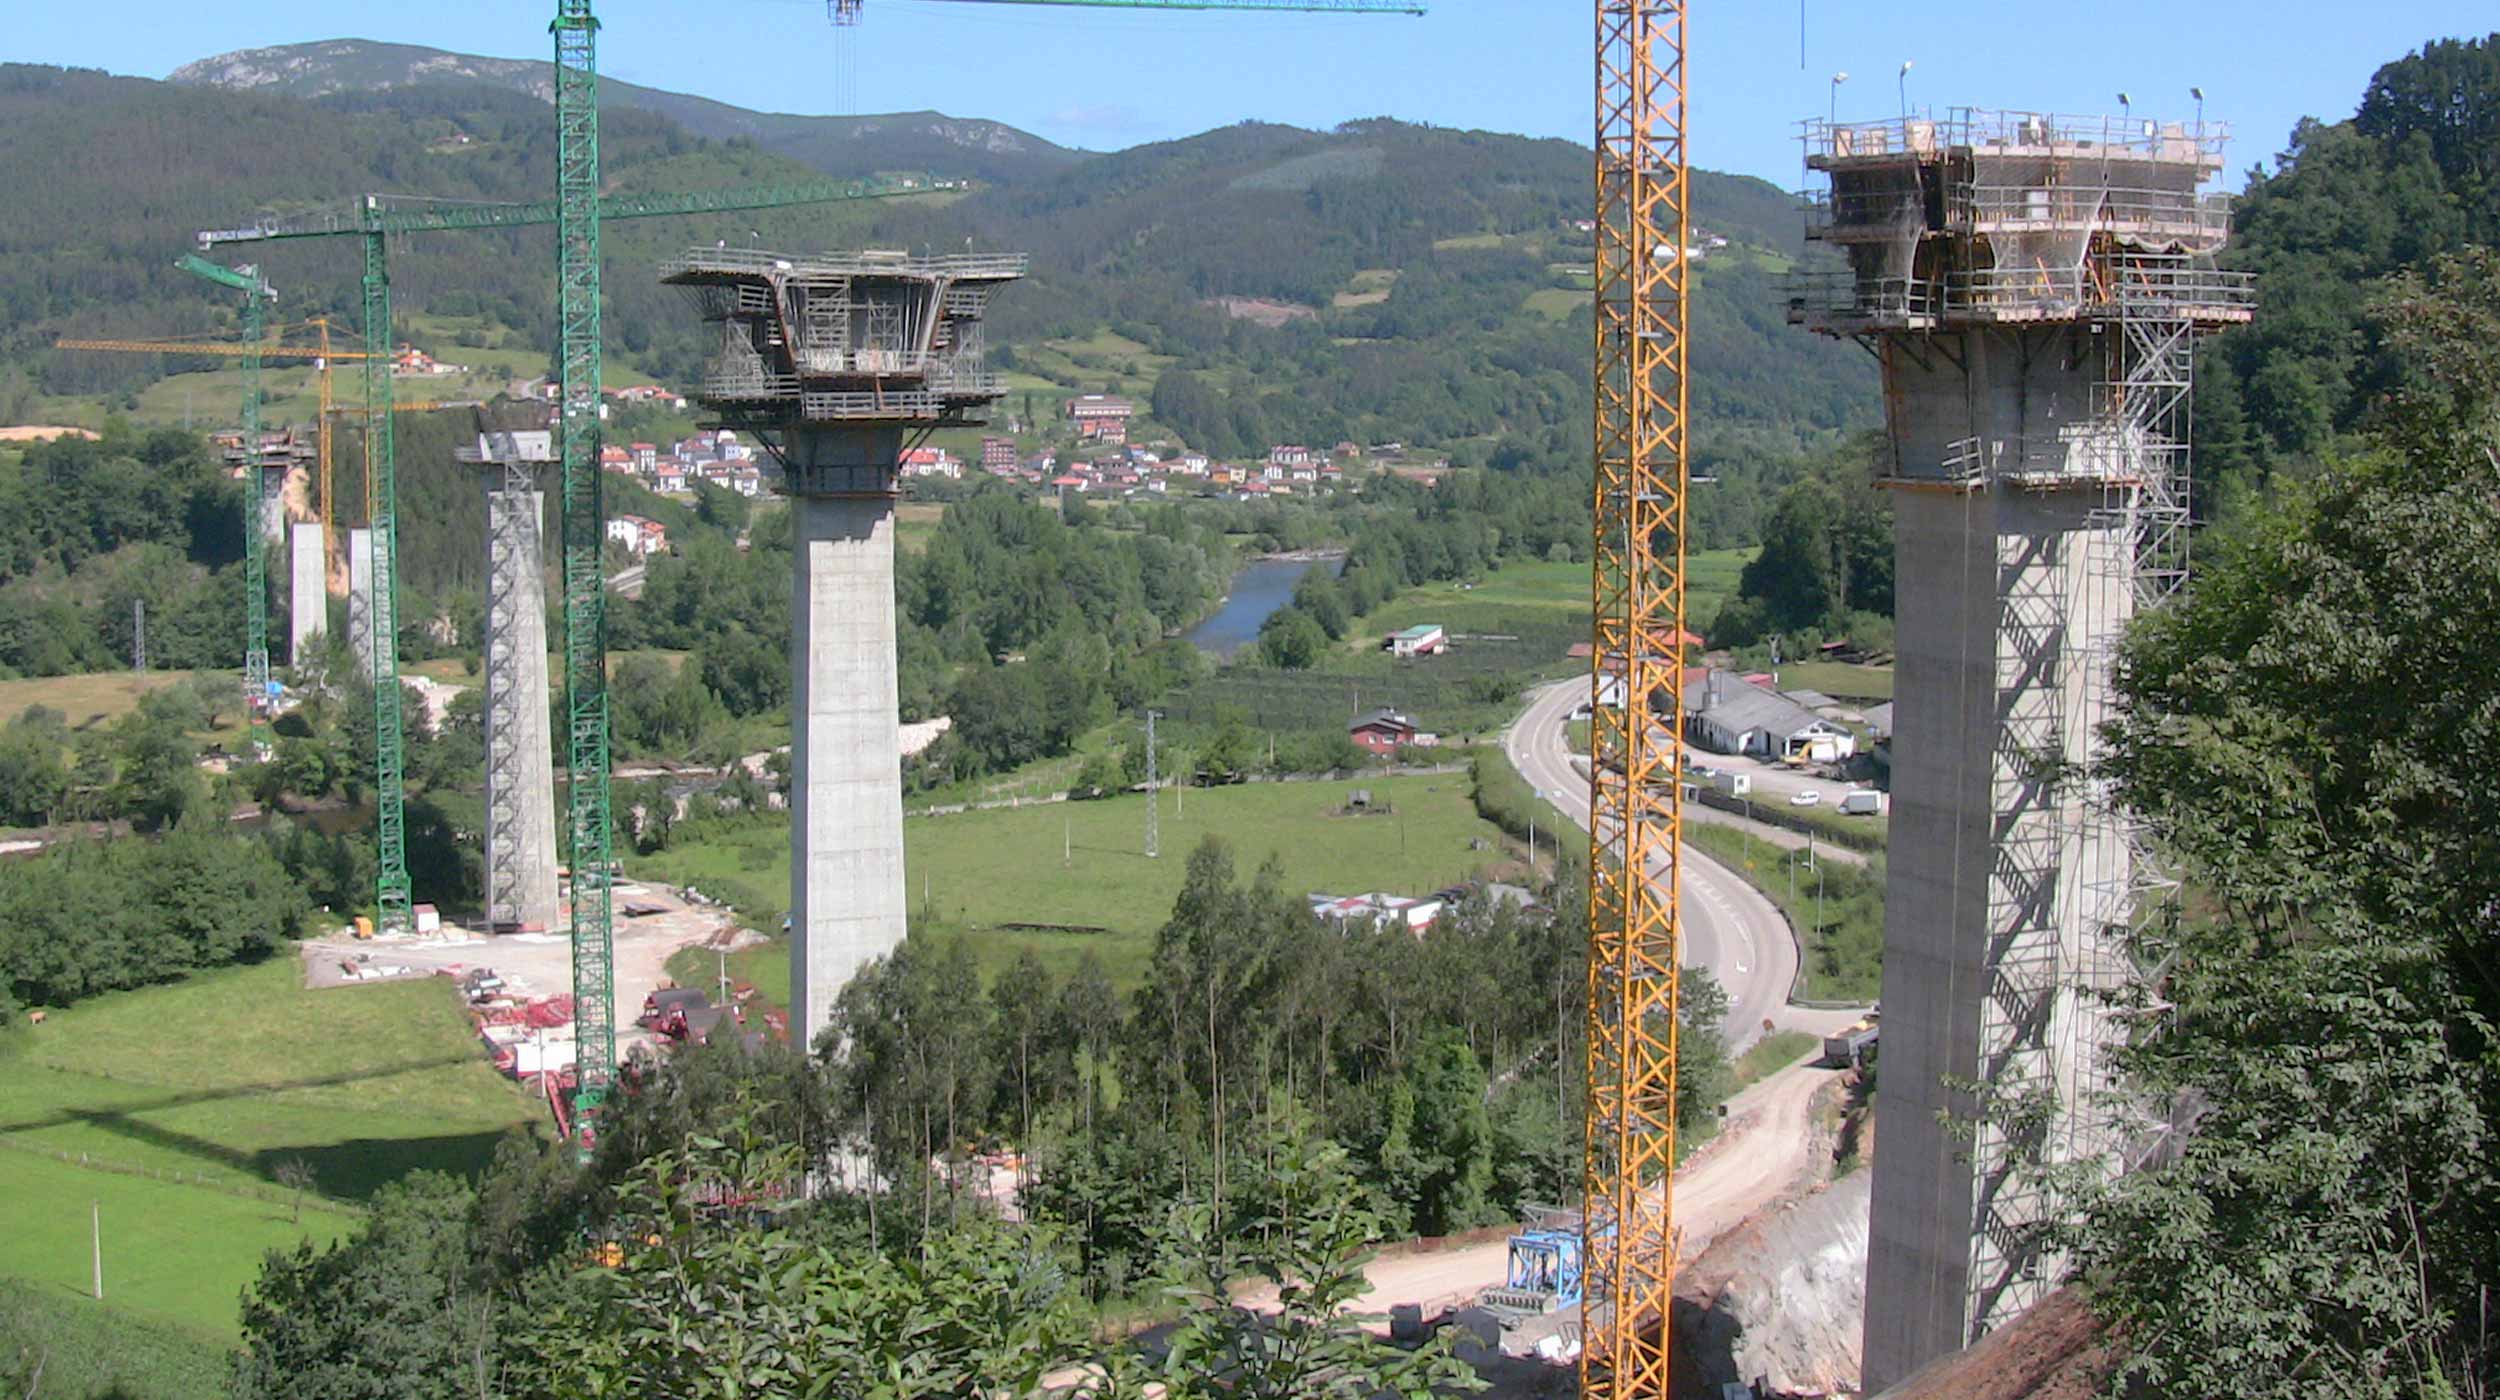 Enmarcado dentro de la Autovía de la Espina A-63 en Asturias, este viaducto constituye su principal infraestructura. Sus 900 m de longitud y voladizos entre pilas de 160 m, le convertirán en el puente con más voladizos sucesivos de España.